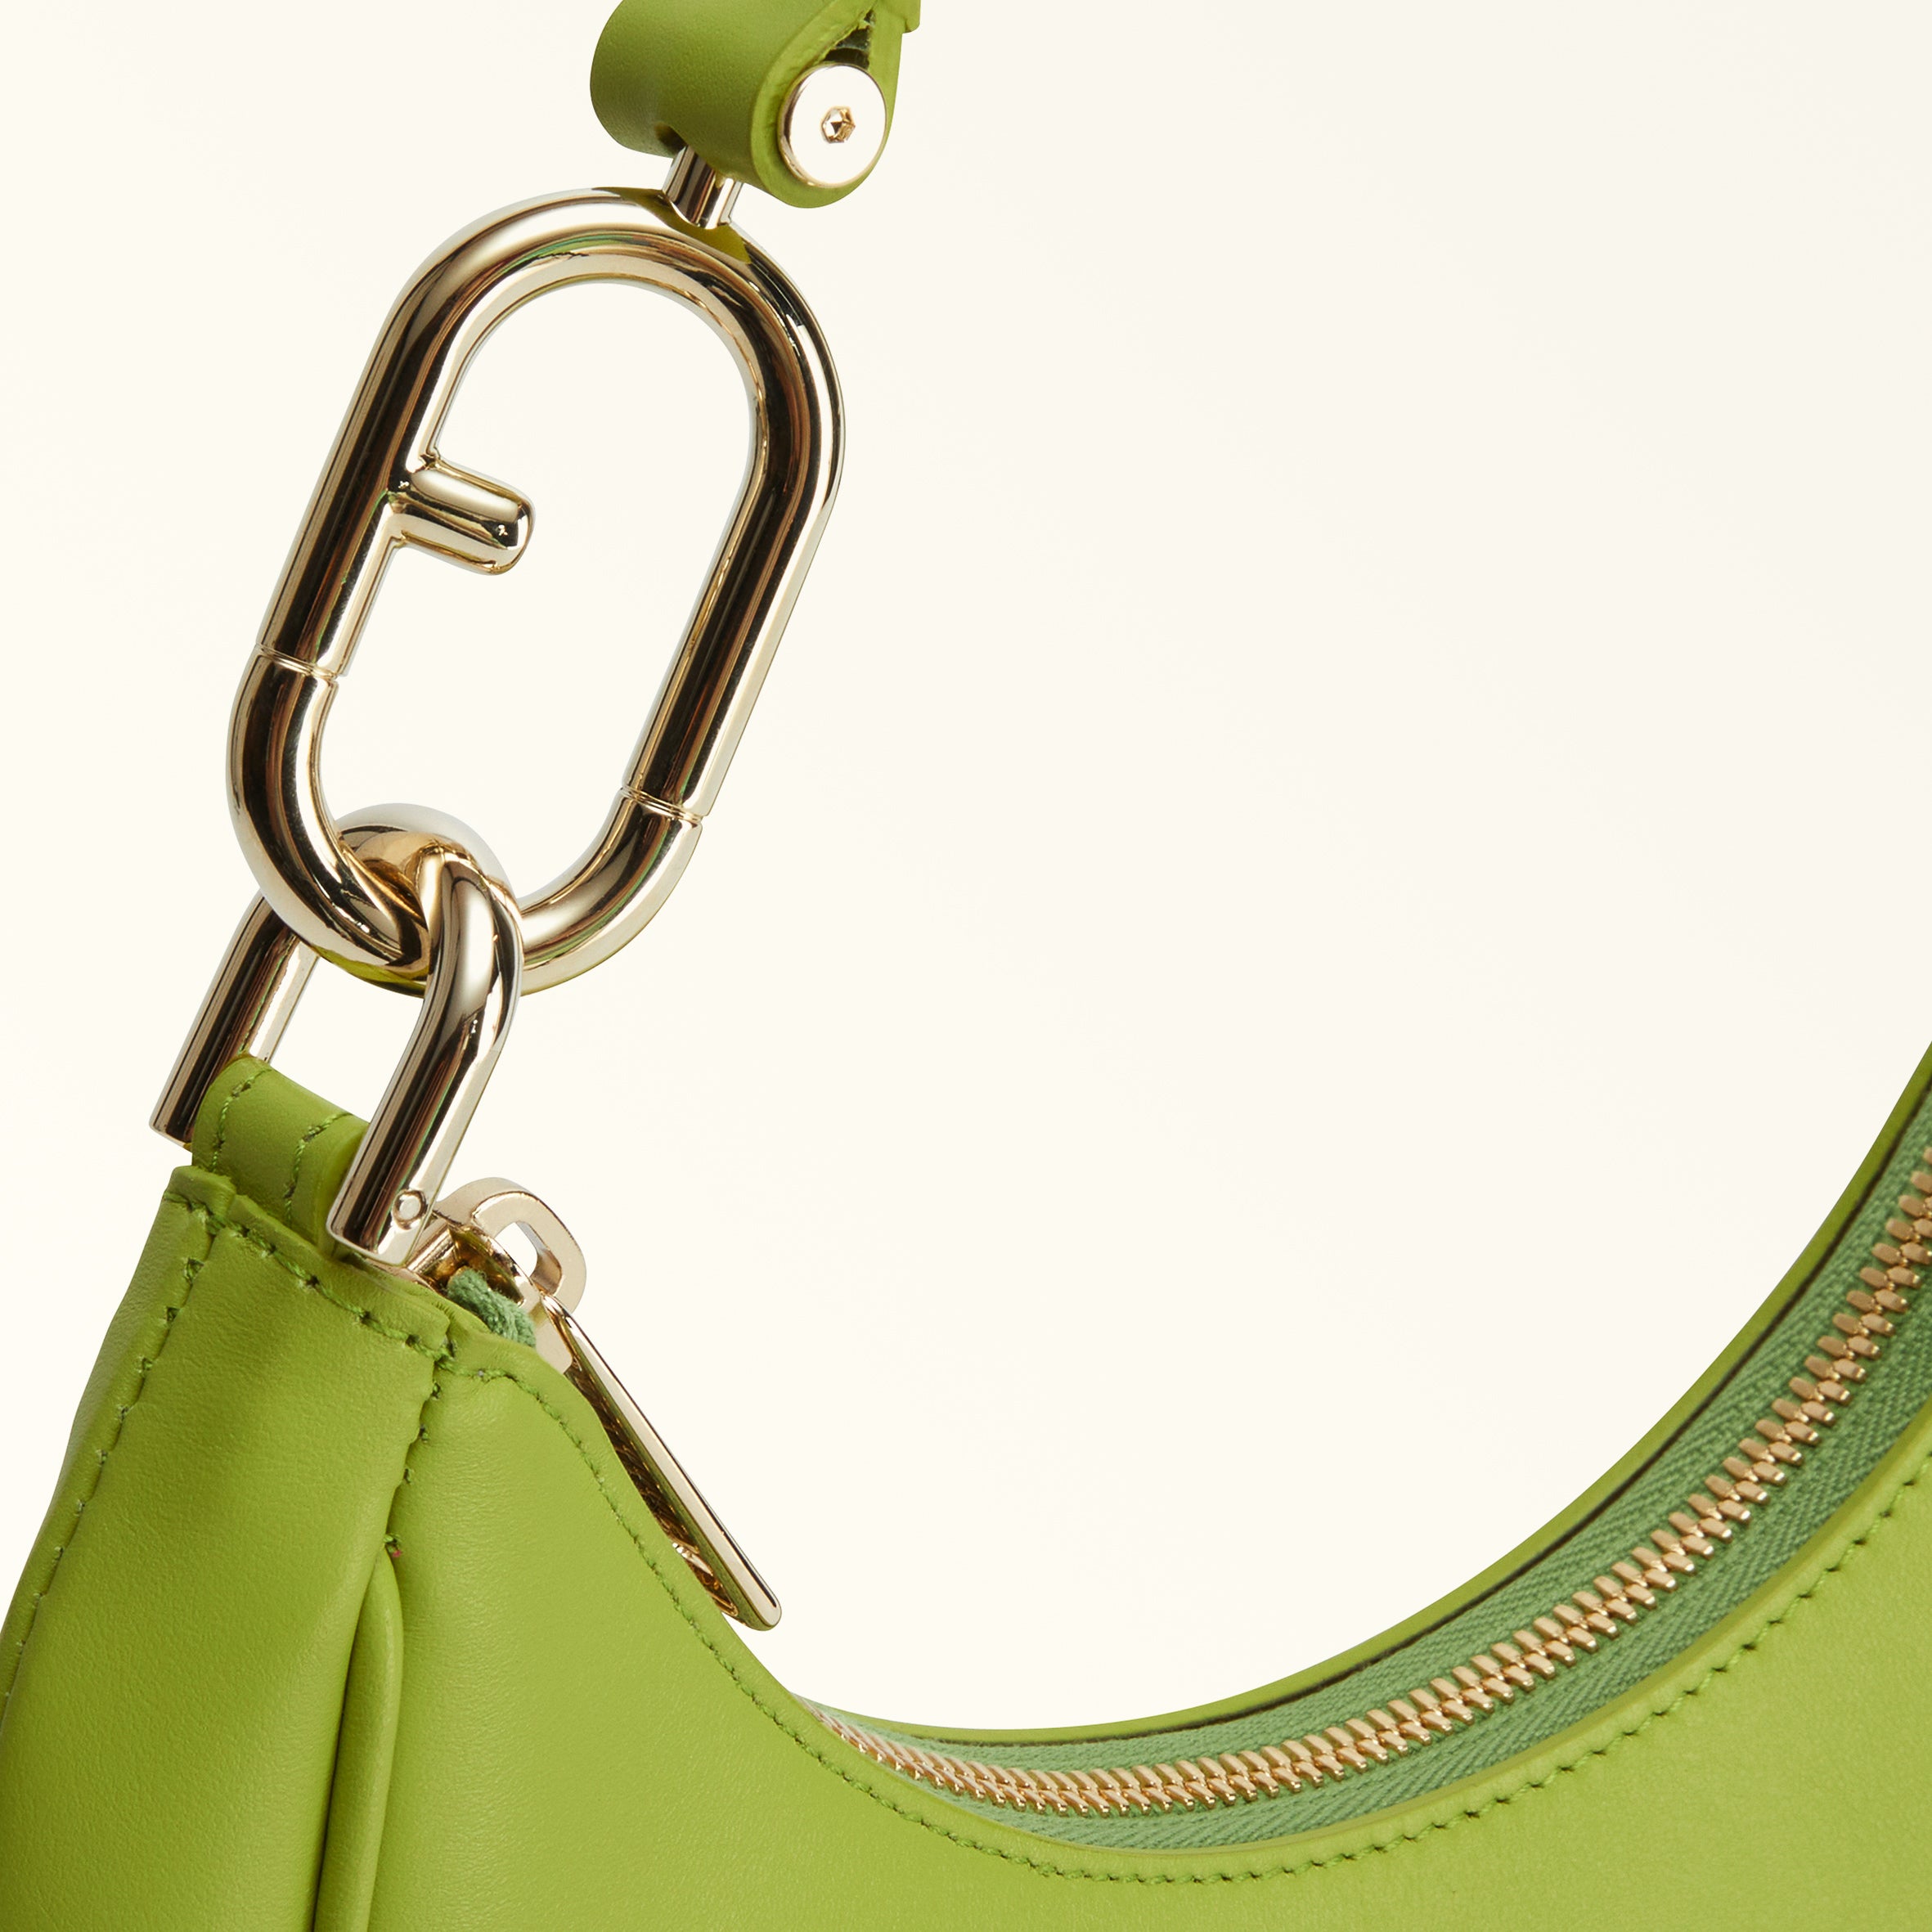 Furla Primavera Shoulder Bag Jazz Green S WB00475AX07332263S1007